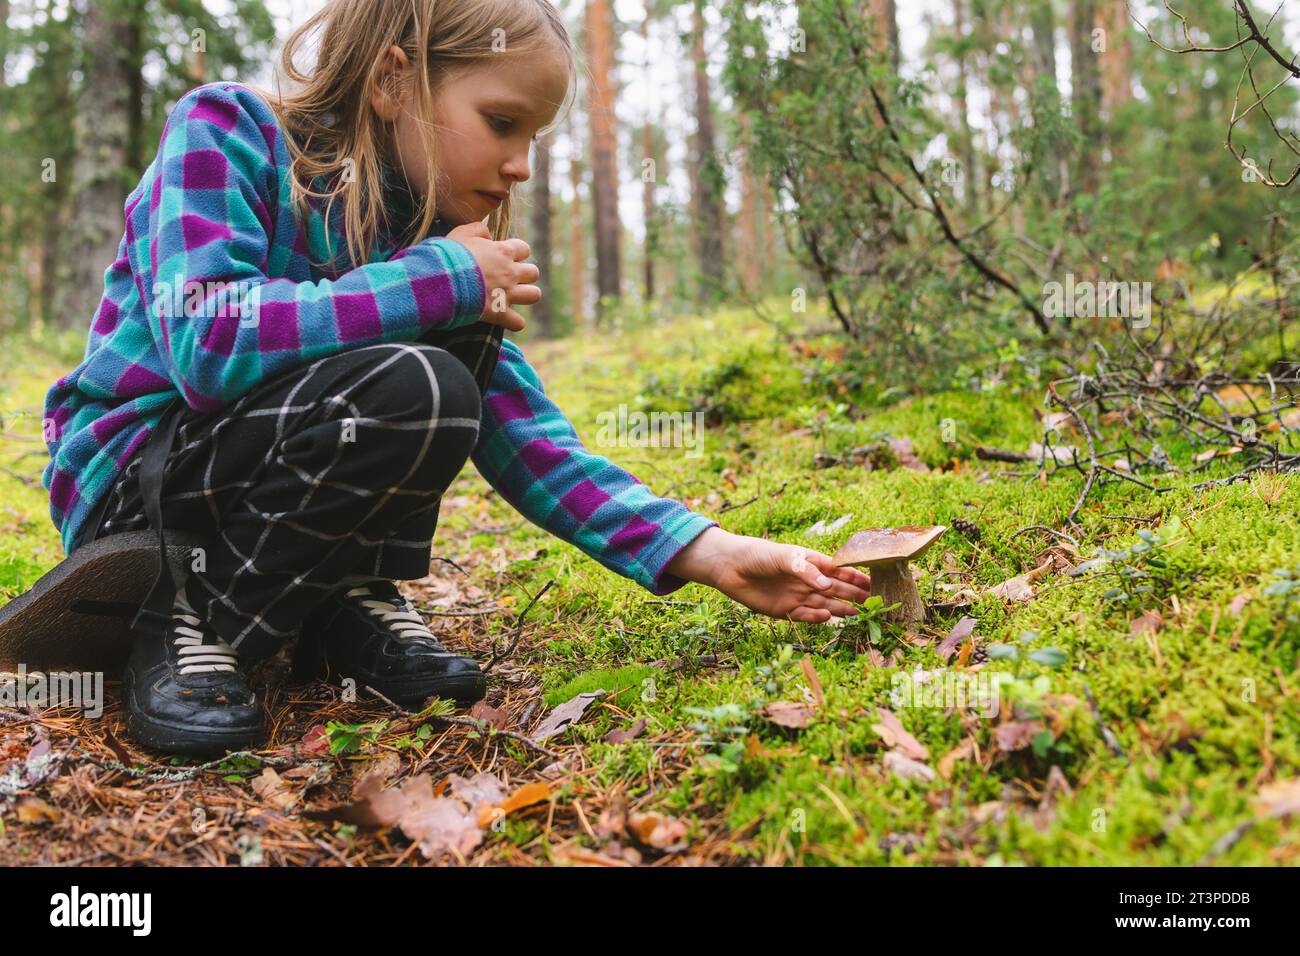 La ragazza dell'età elementare ha trovato il fungo commestibile Boletus edulis (cep o penny bun) mentre campeggiava in una foresta Foto Stock